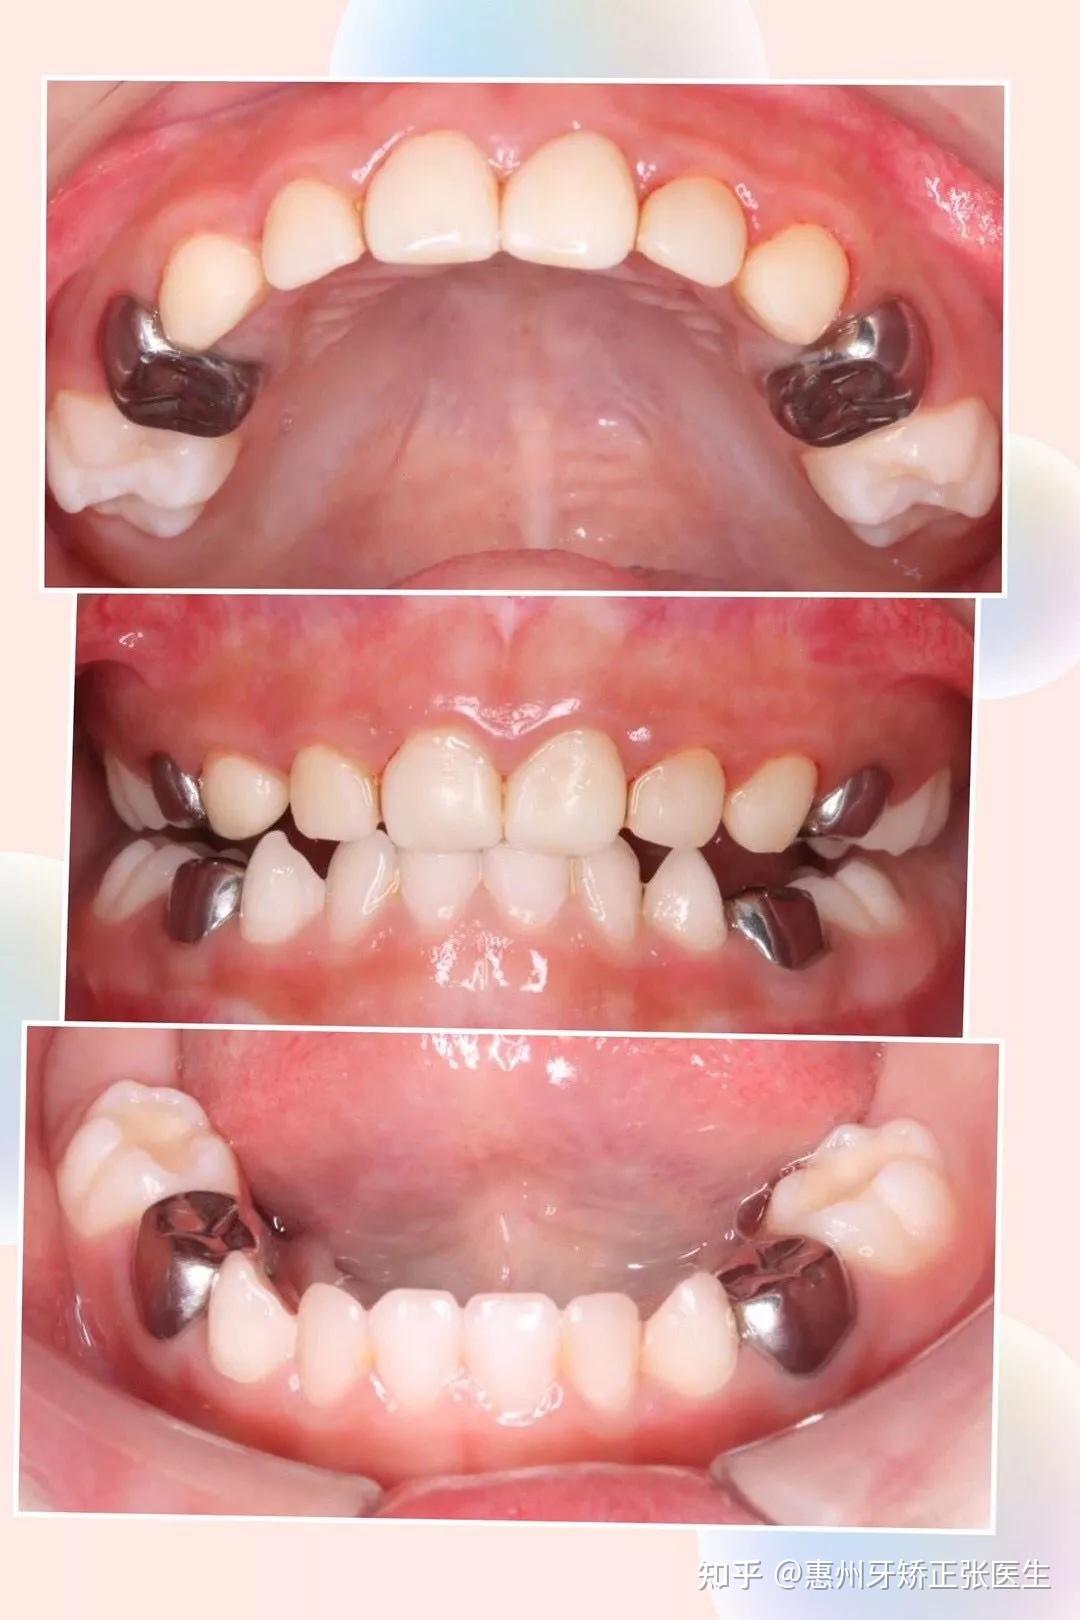 乳牙斷裂的牙科處理 | 小太陽牙醫診所